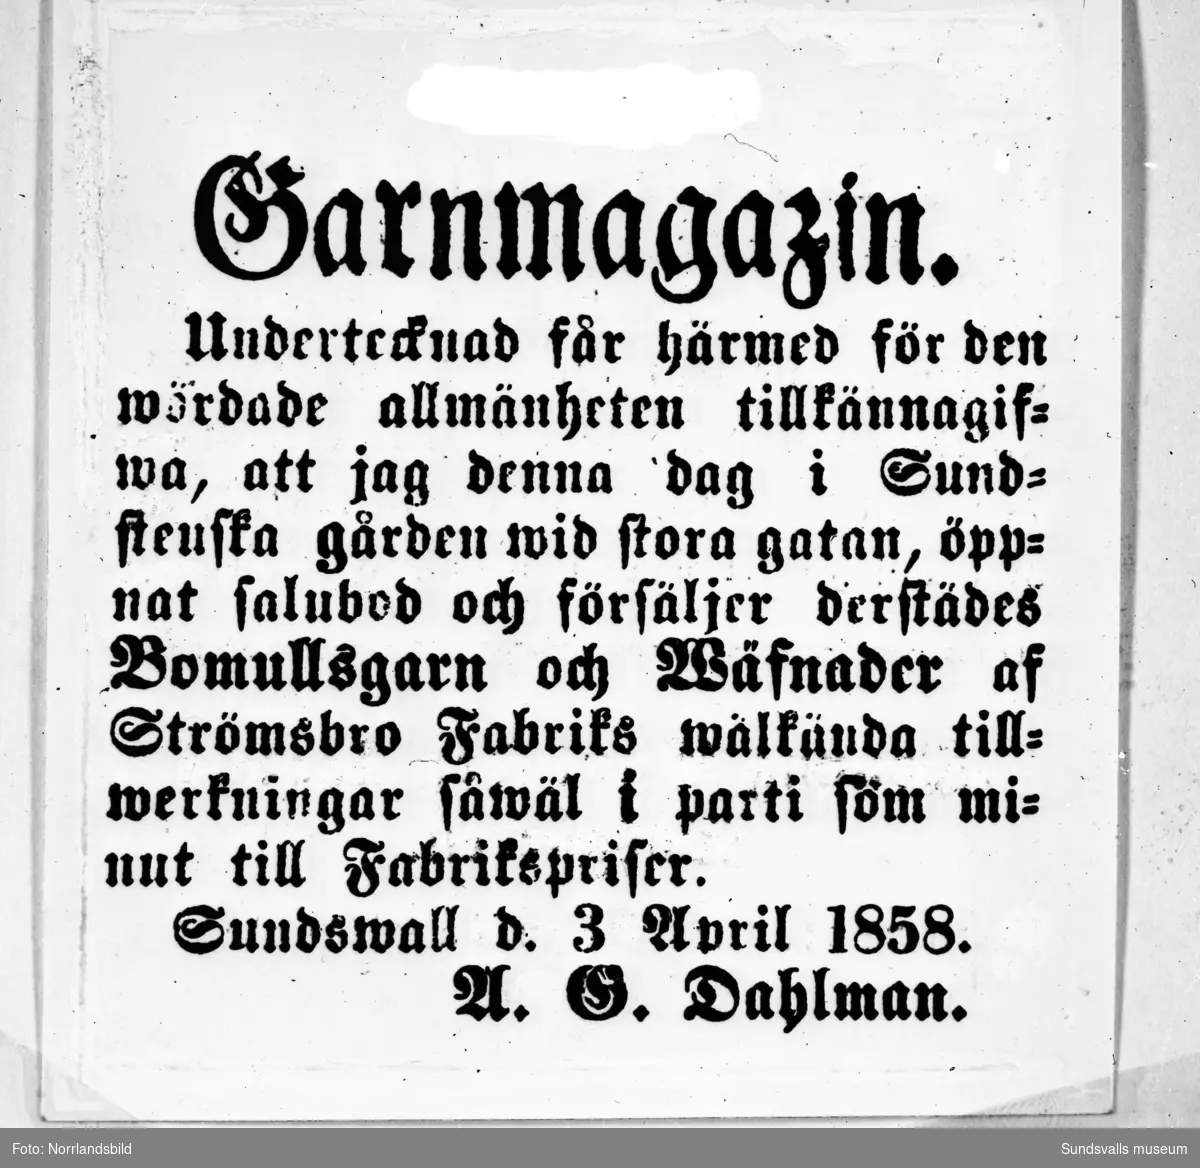 Gatuvy vid Dahlmans varuhus på Storgatan 38. Andra bilden är ett reprofoto av en gammal annons från 1858 då rörelsen startade.